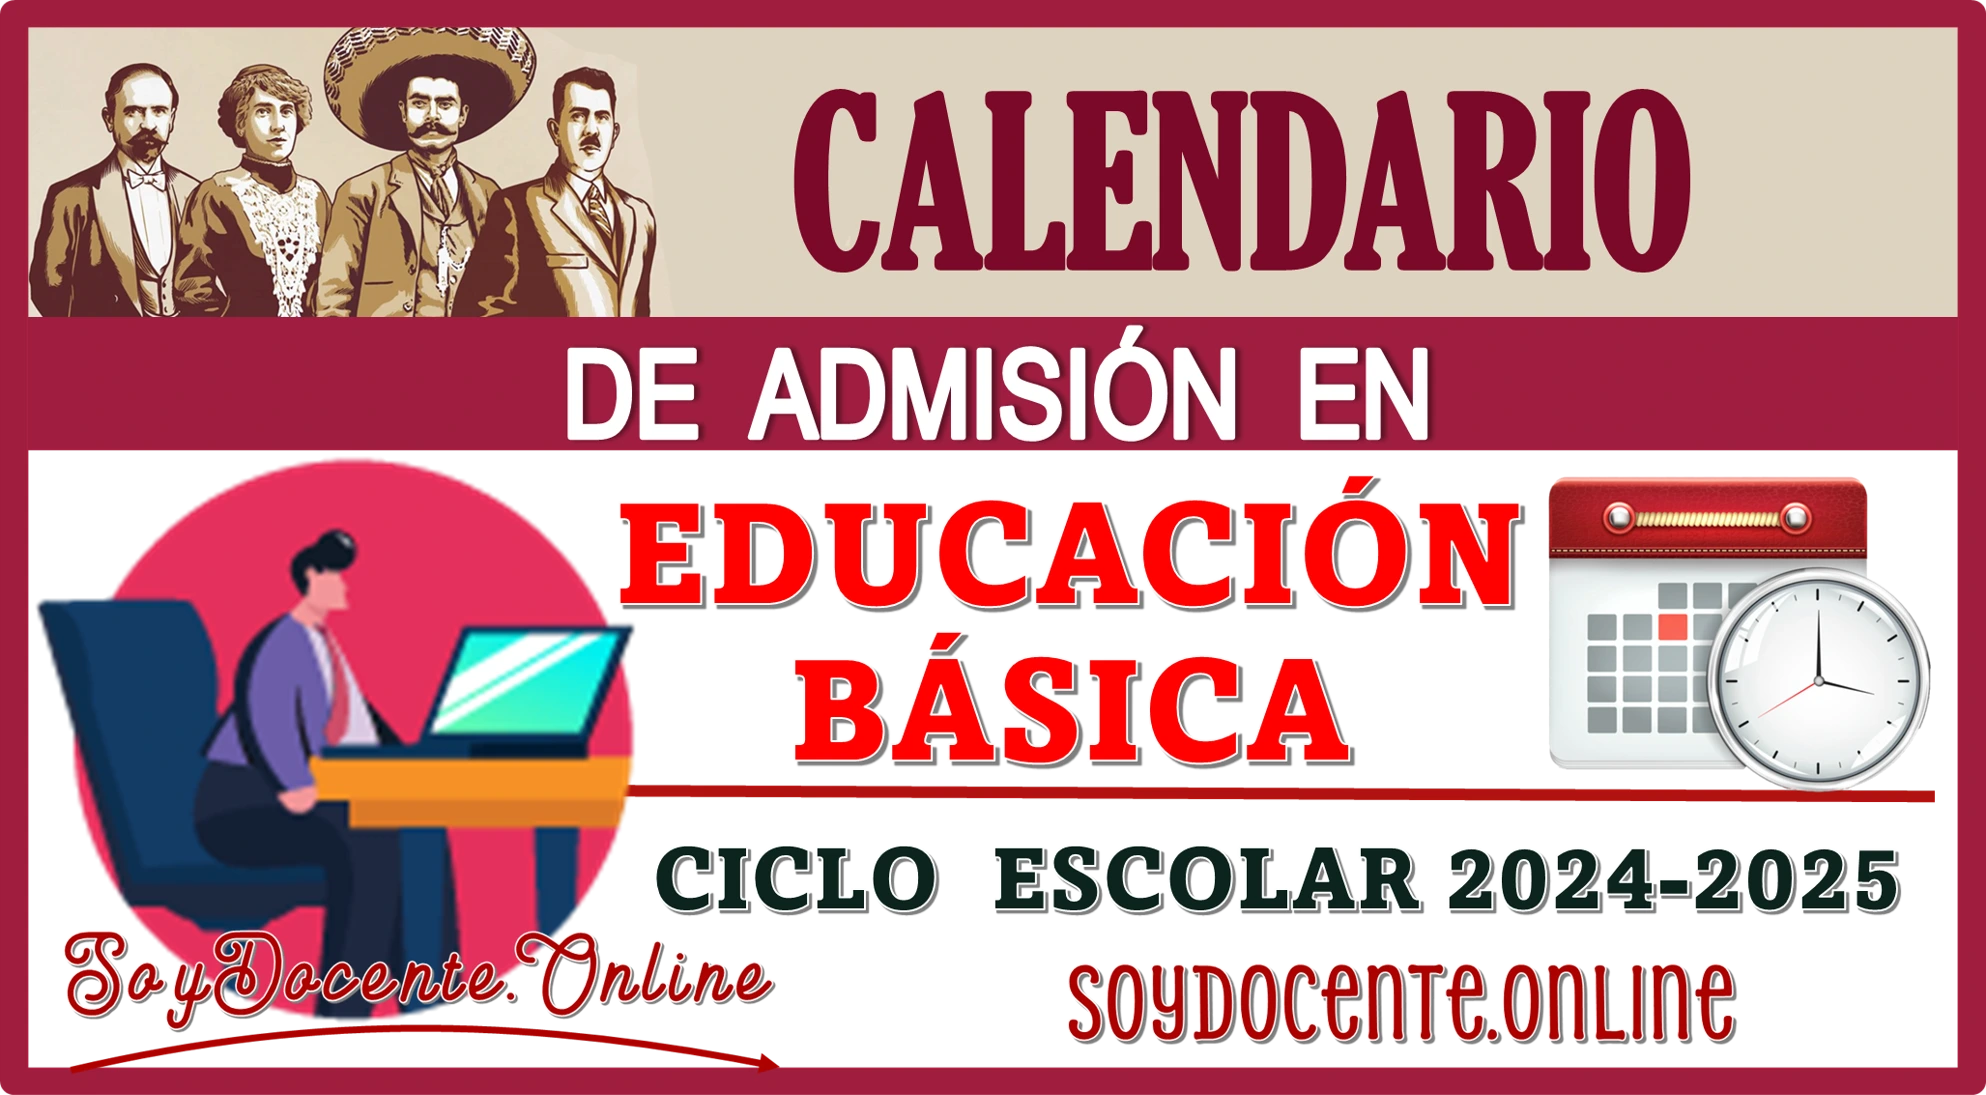 📆👨‍🏫📆👩‍🏫 CALENDARIO DE ADMISIÓN EN EDUCACIÓN BÁSICA | CICLO ESCOLAR 2024-2025 (USICAMM)📆👨‍🏫📆👩‍🏫